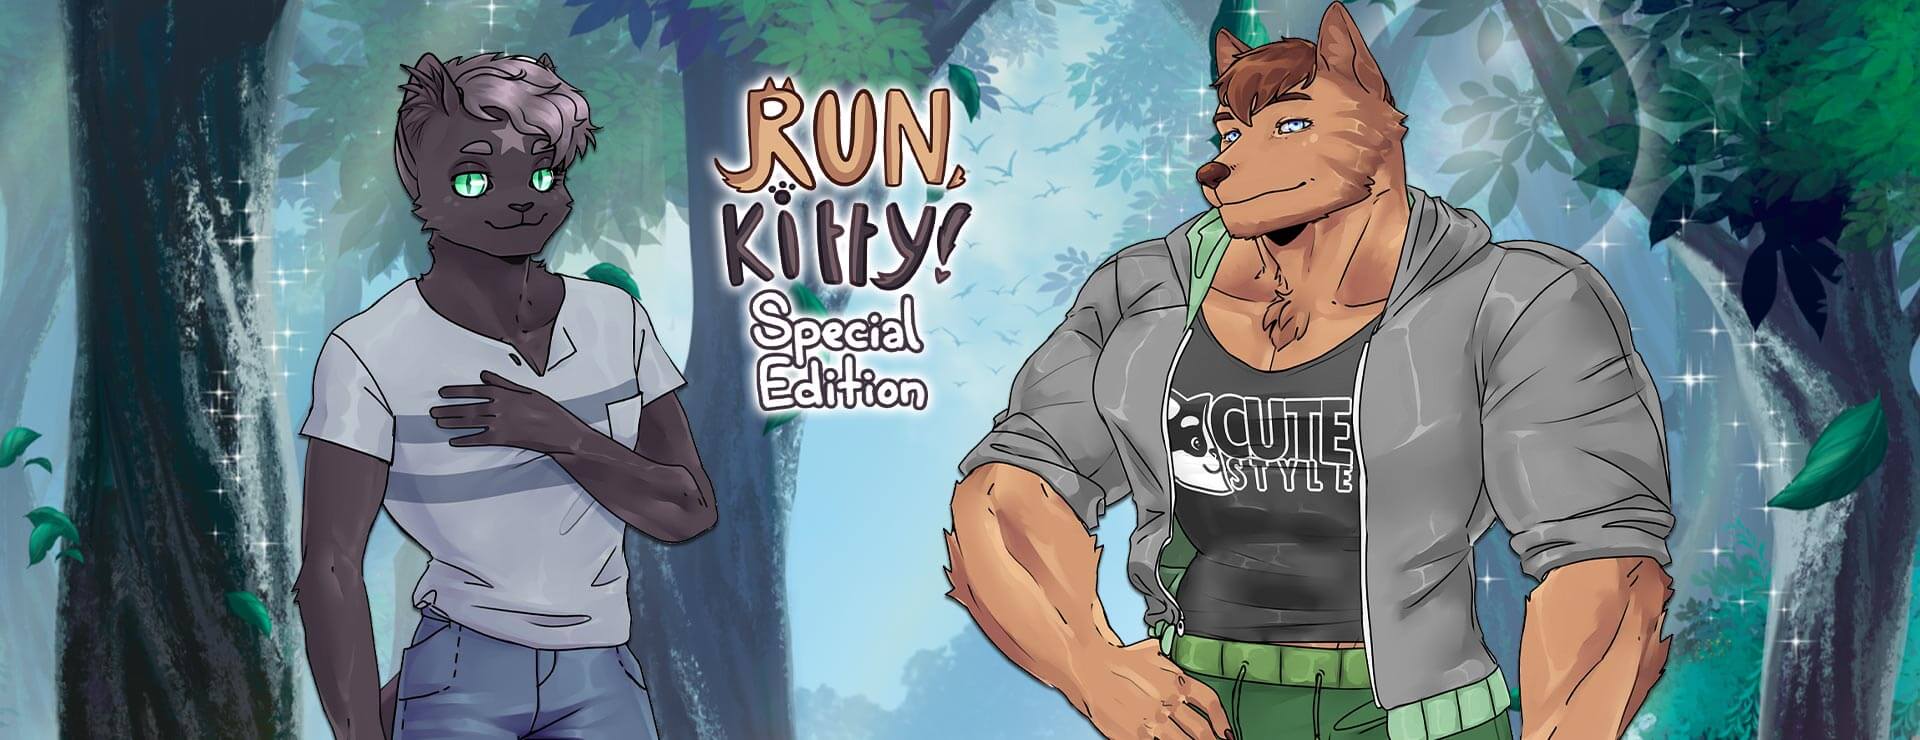 Run, Kitty! Special Edition - Powieść wizualna Gra